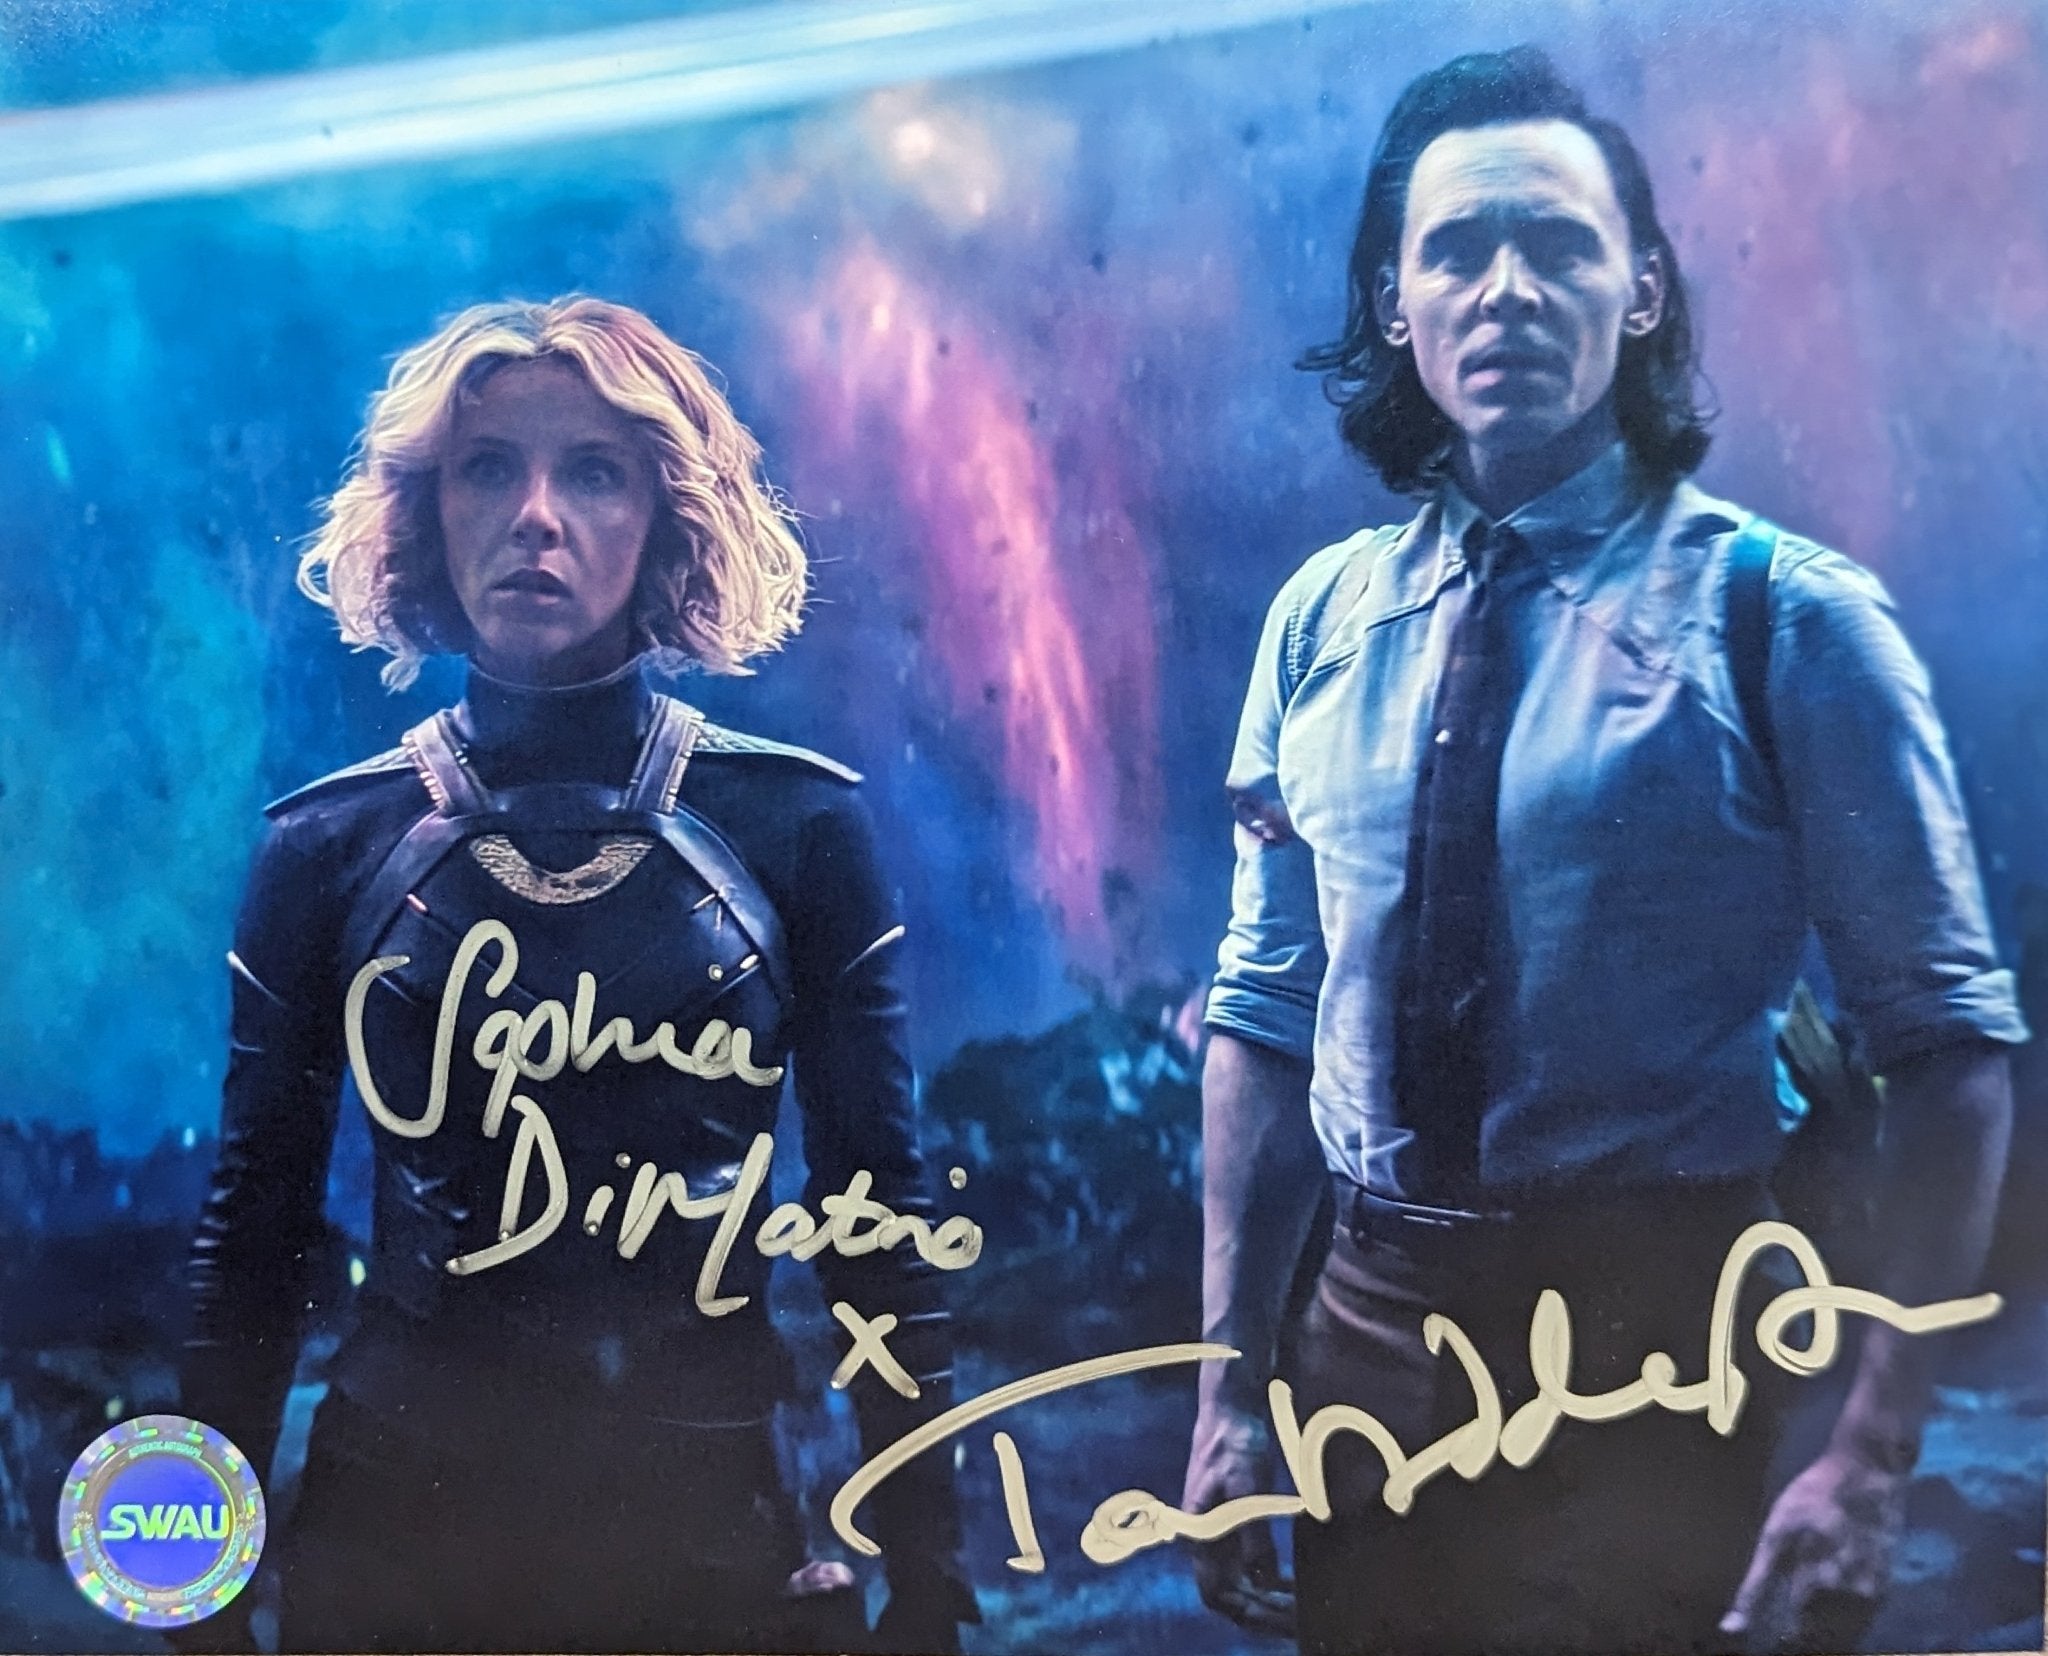 Tom Hiddleston Loki Netflix Endgame Autograph – Autograph101